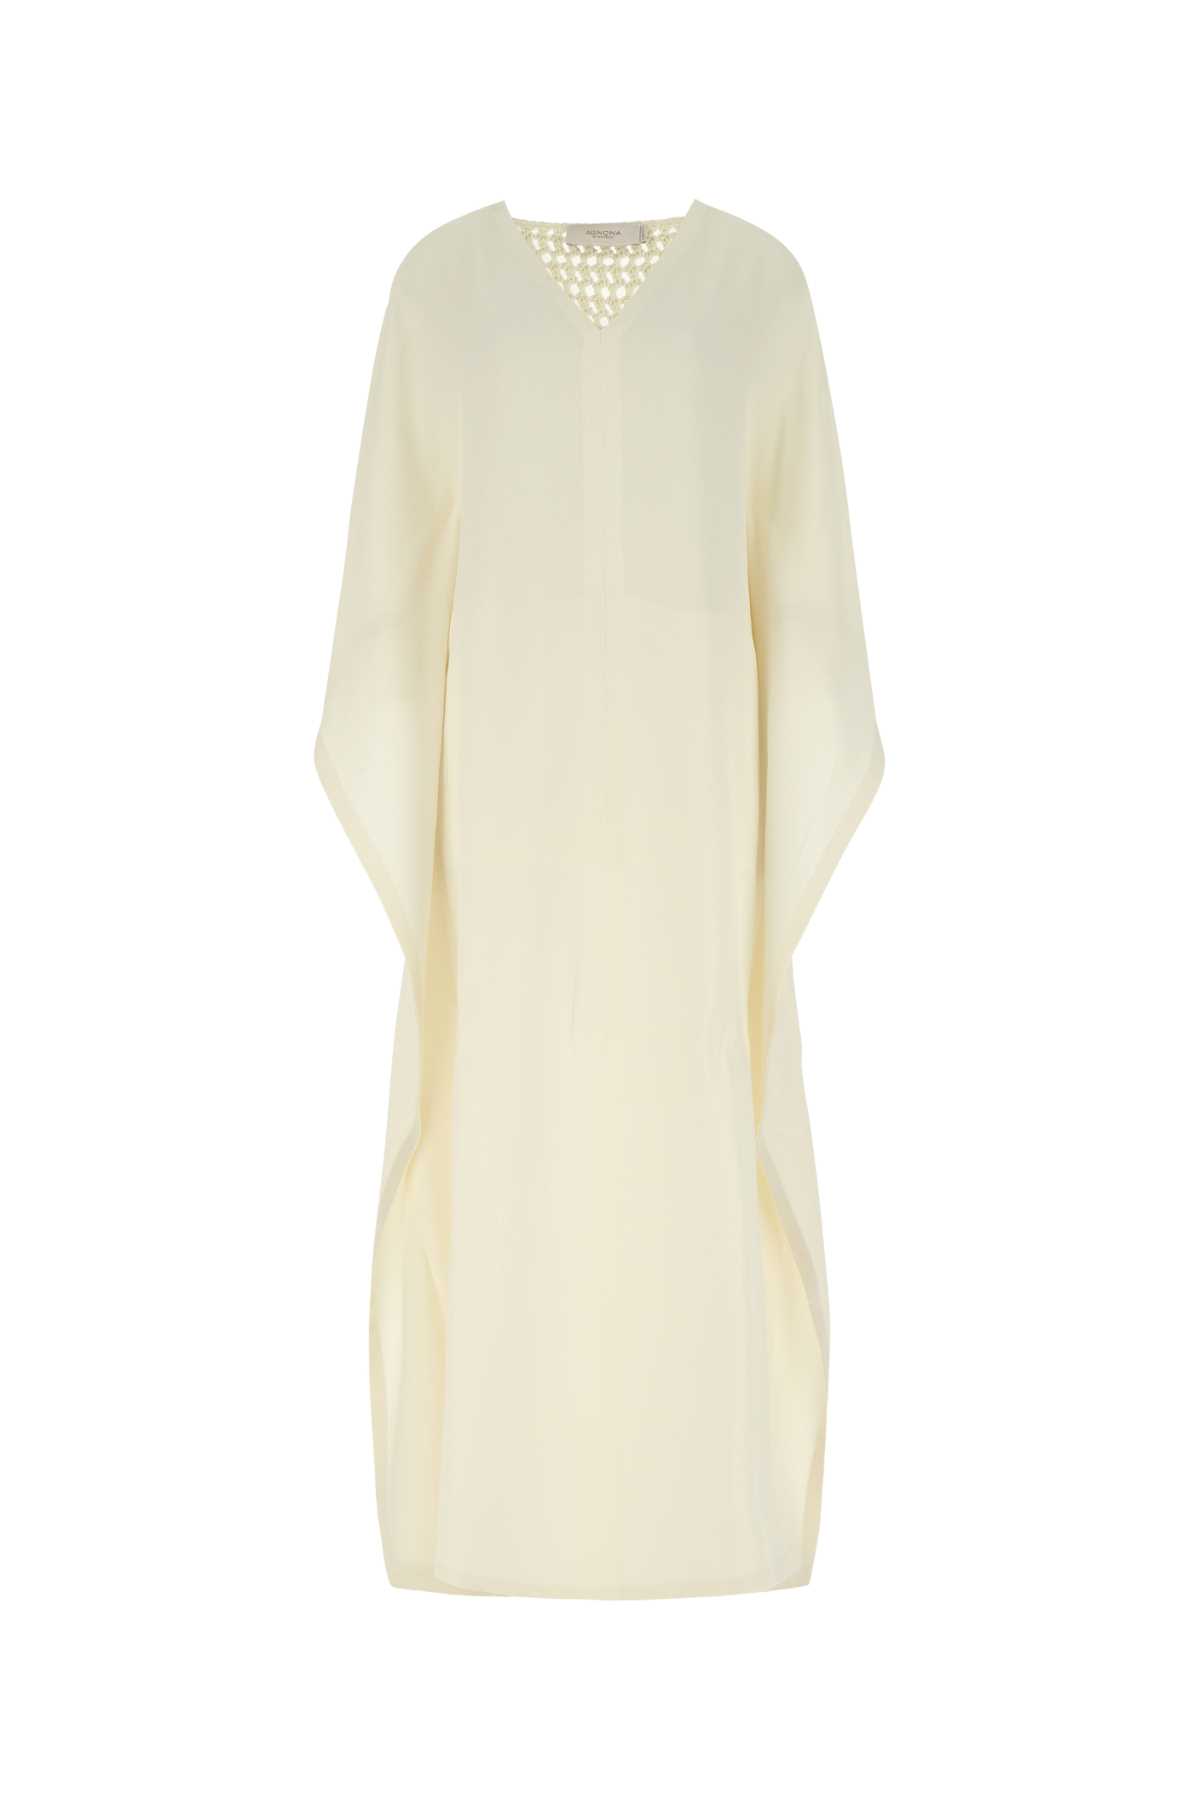 Ivory Wool Blend Tunic Dress